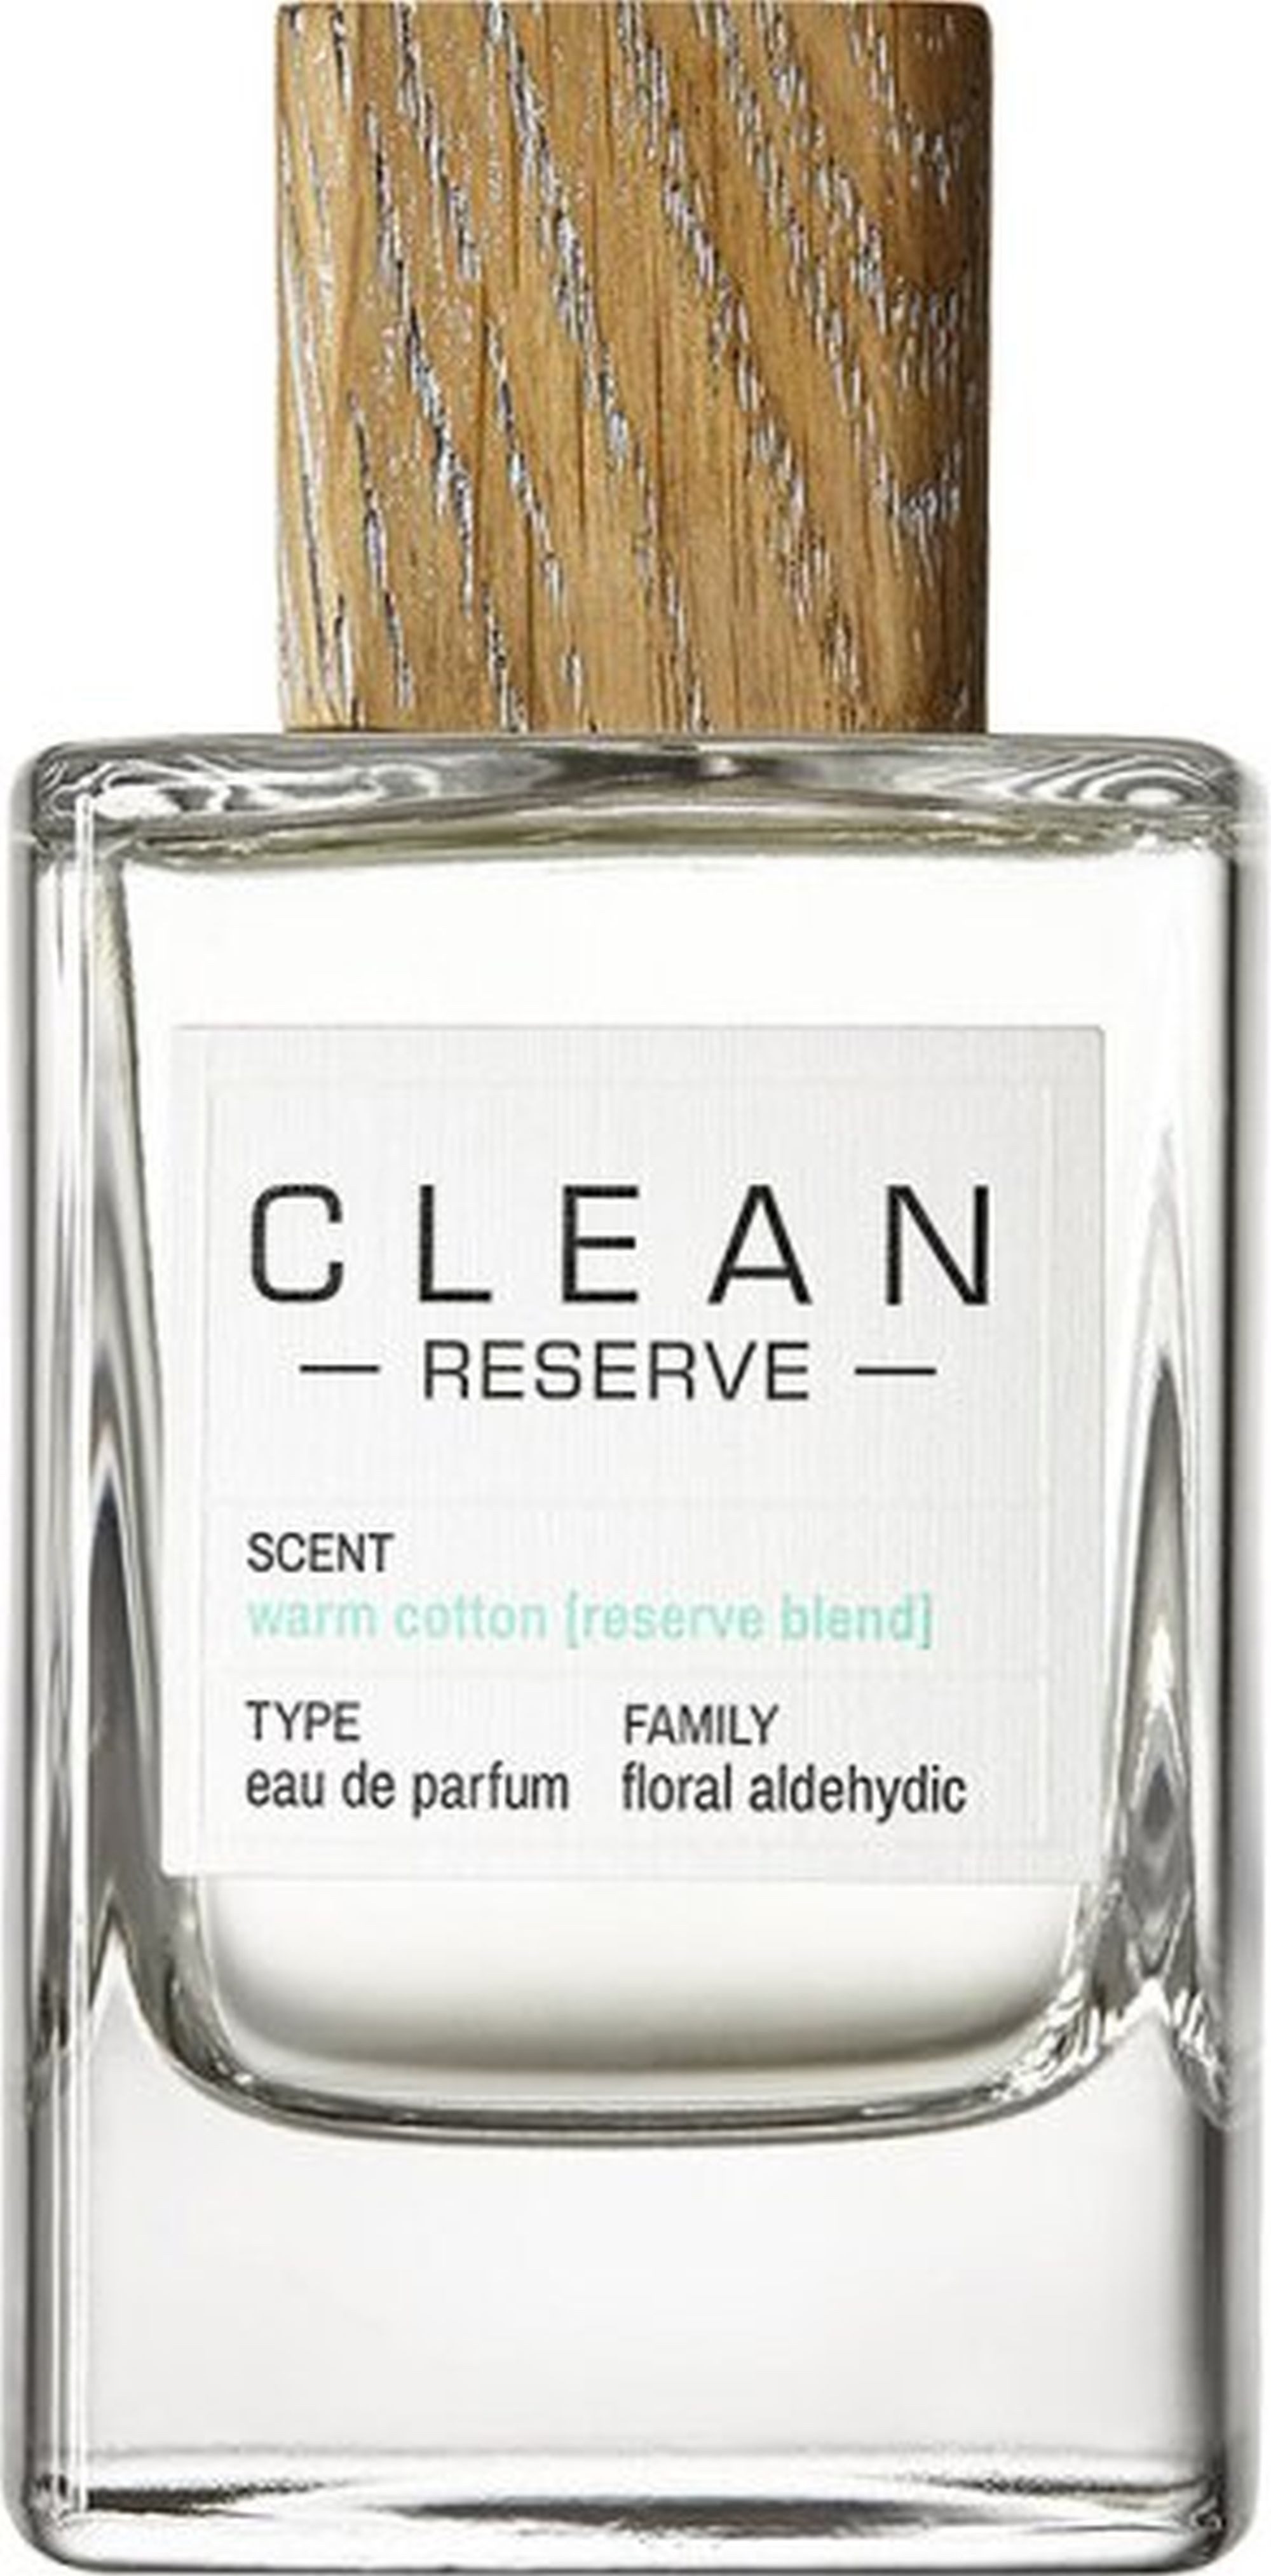 Clean Reserve Eau de Parfum Classic Collection Blend Warm Cotton